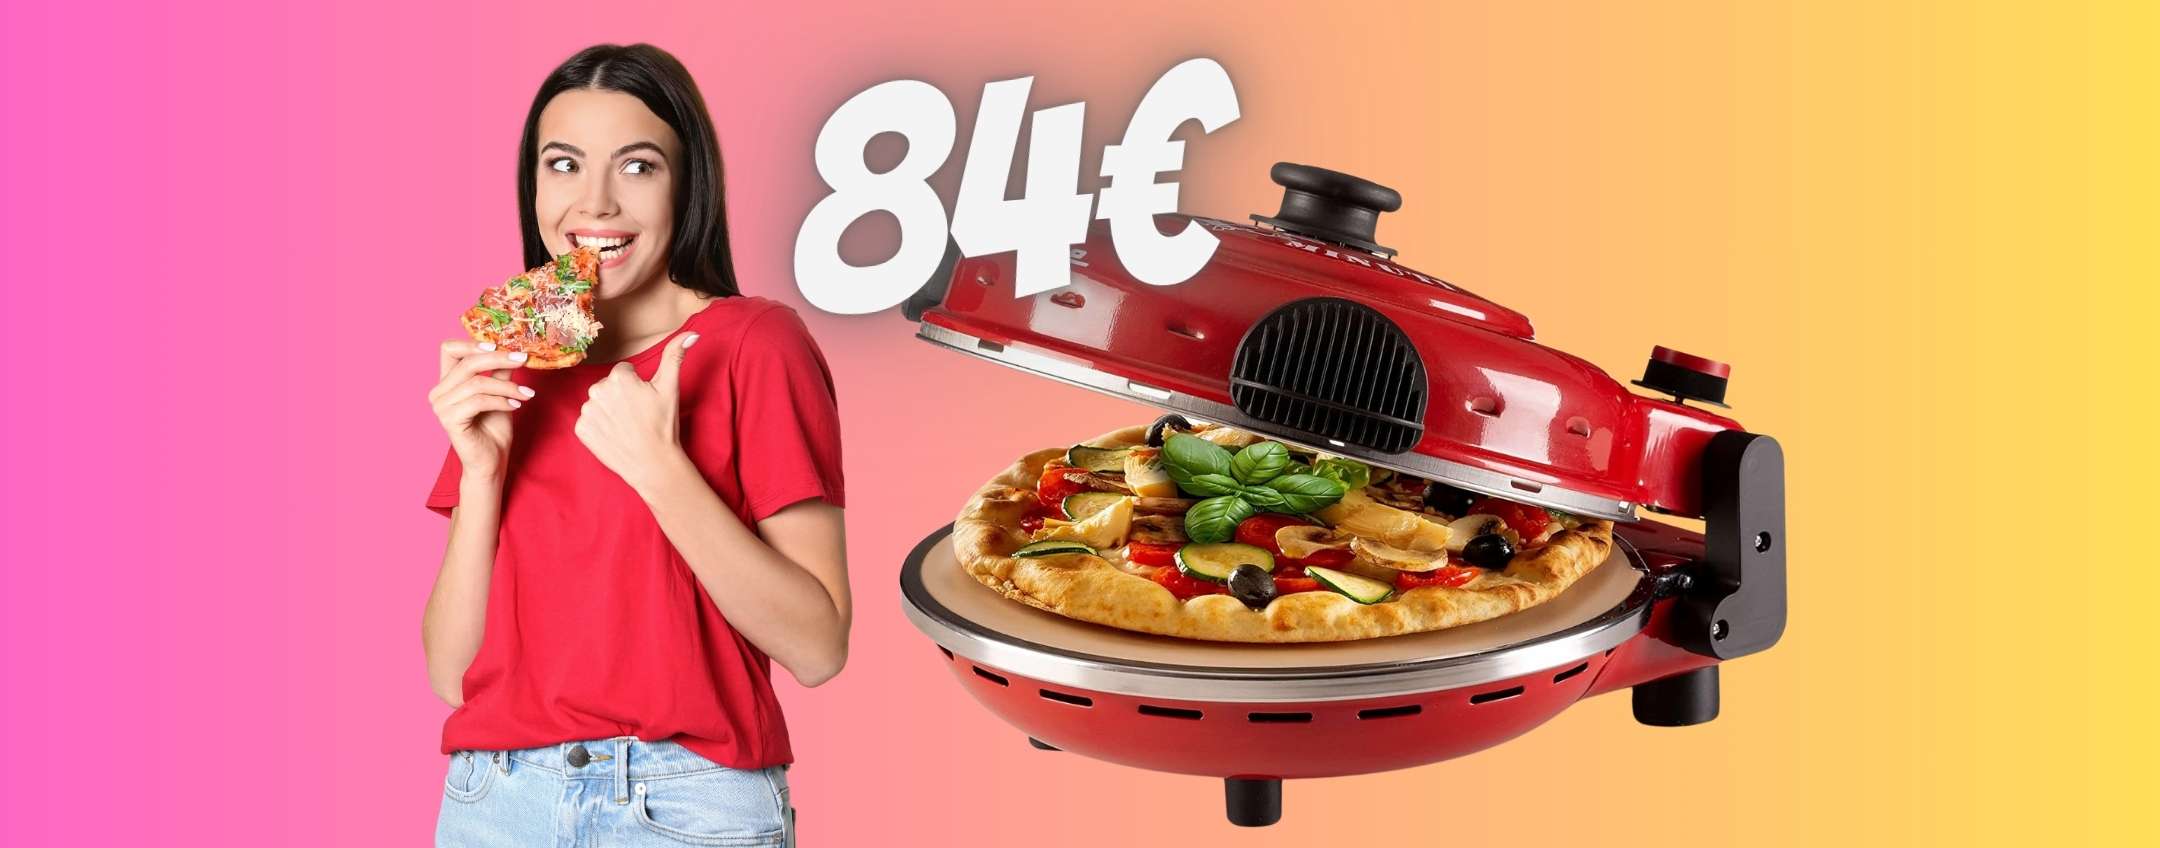 Pizza buonissima in appena 4 minuti con il forno Ariete 919 a soli 84€